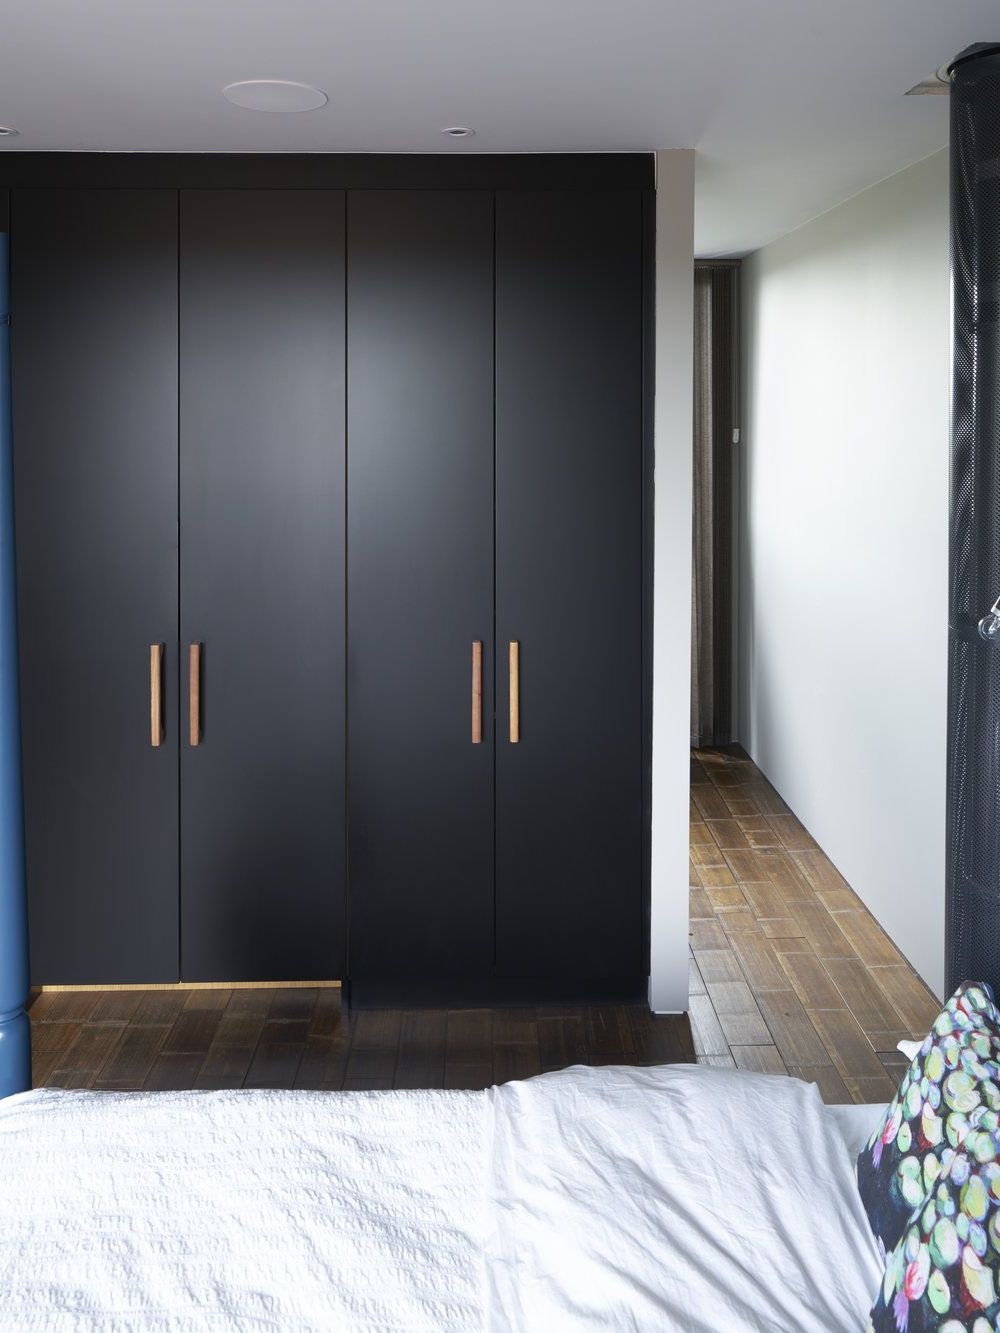 Black Matt Lacquer Wardrobes With Bespoke Oak Handles | Bedroom Cupboards,  Bedroom Closet Design, Wall Wardrobe Design With Black Wardrobes (View 9 of 20)